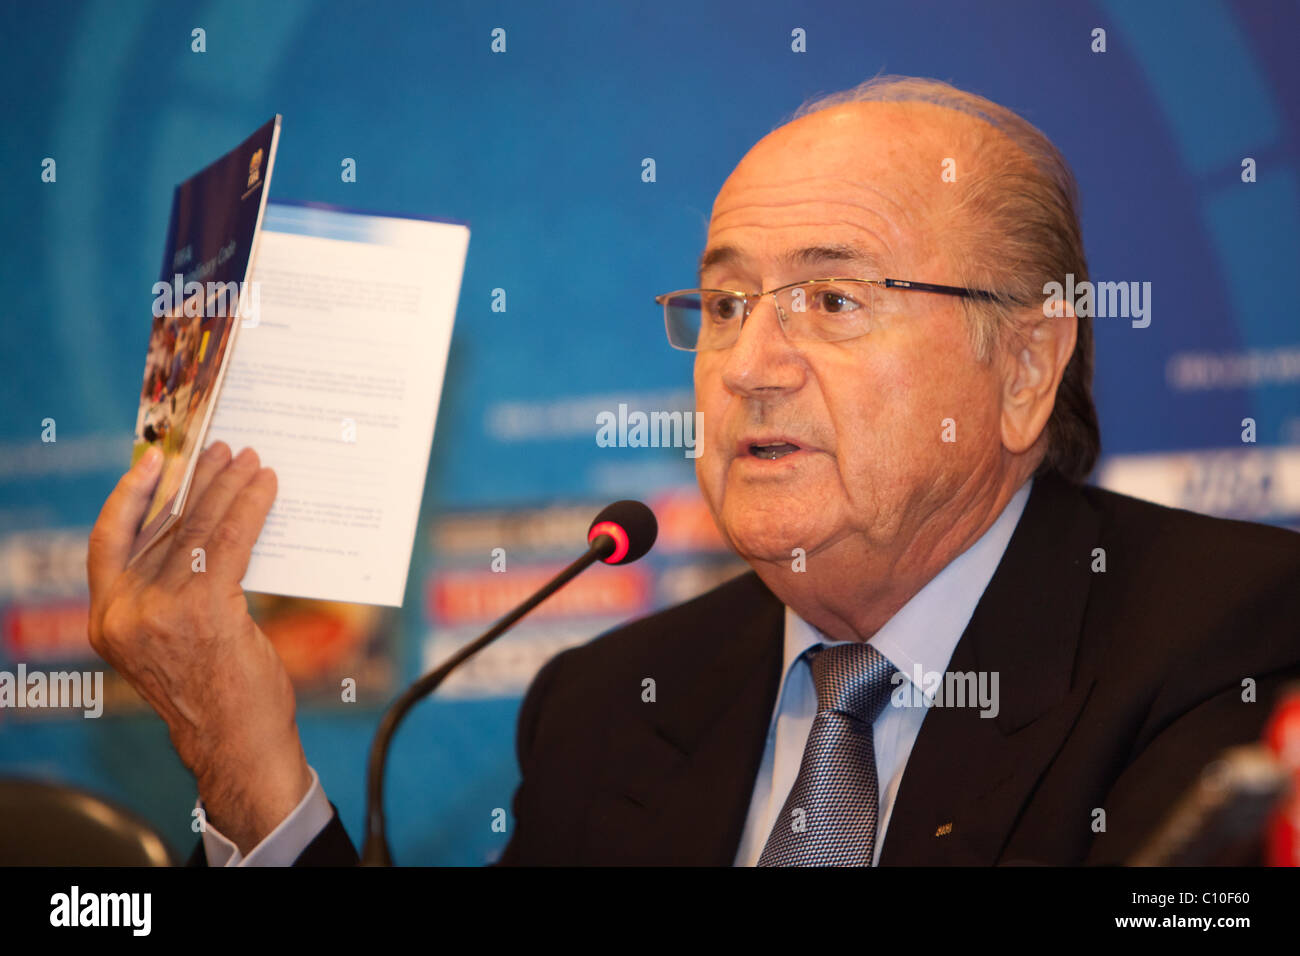 El Presidente de la FIFA, Sepp Blatter, mantiene una copia del Código Disciplinario de la FIFA al abordar una cuestión en una conferencia de prensa U20. Foto de stock